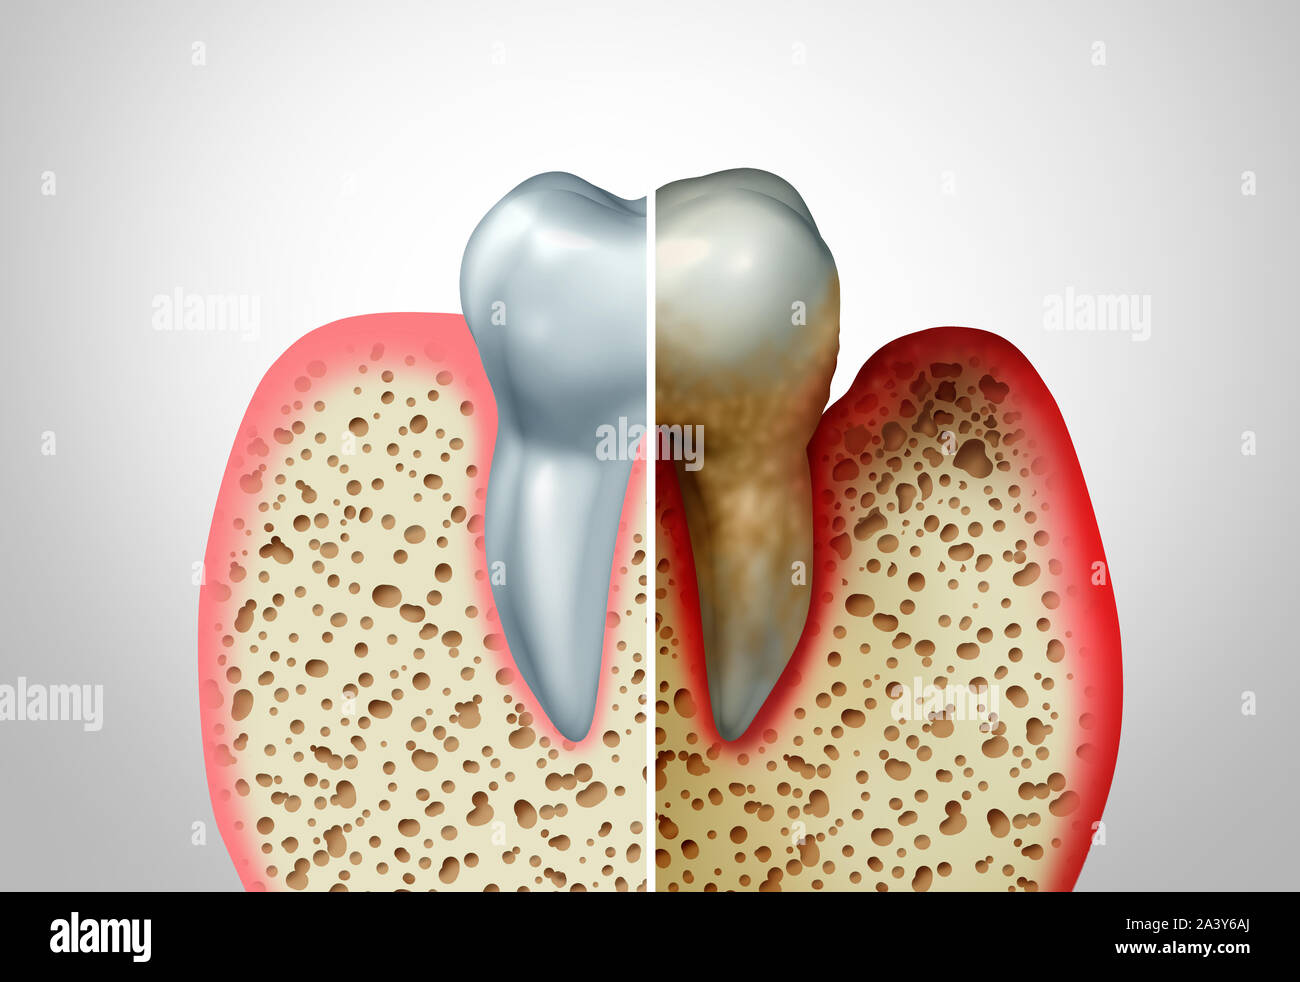 Gummi Krankheit im Vergleich mit einem gesunden Zahn und eine ungesunde mit Parodontitis und schlechte Mundhygiene Gesundheit Problem als Bakterien Infektion. Stockfoto